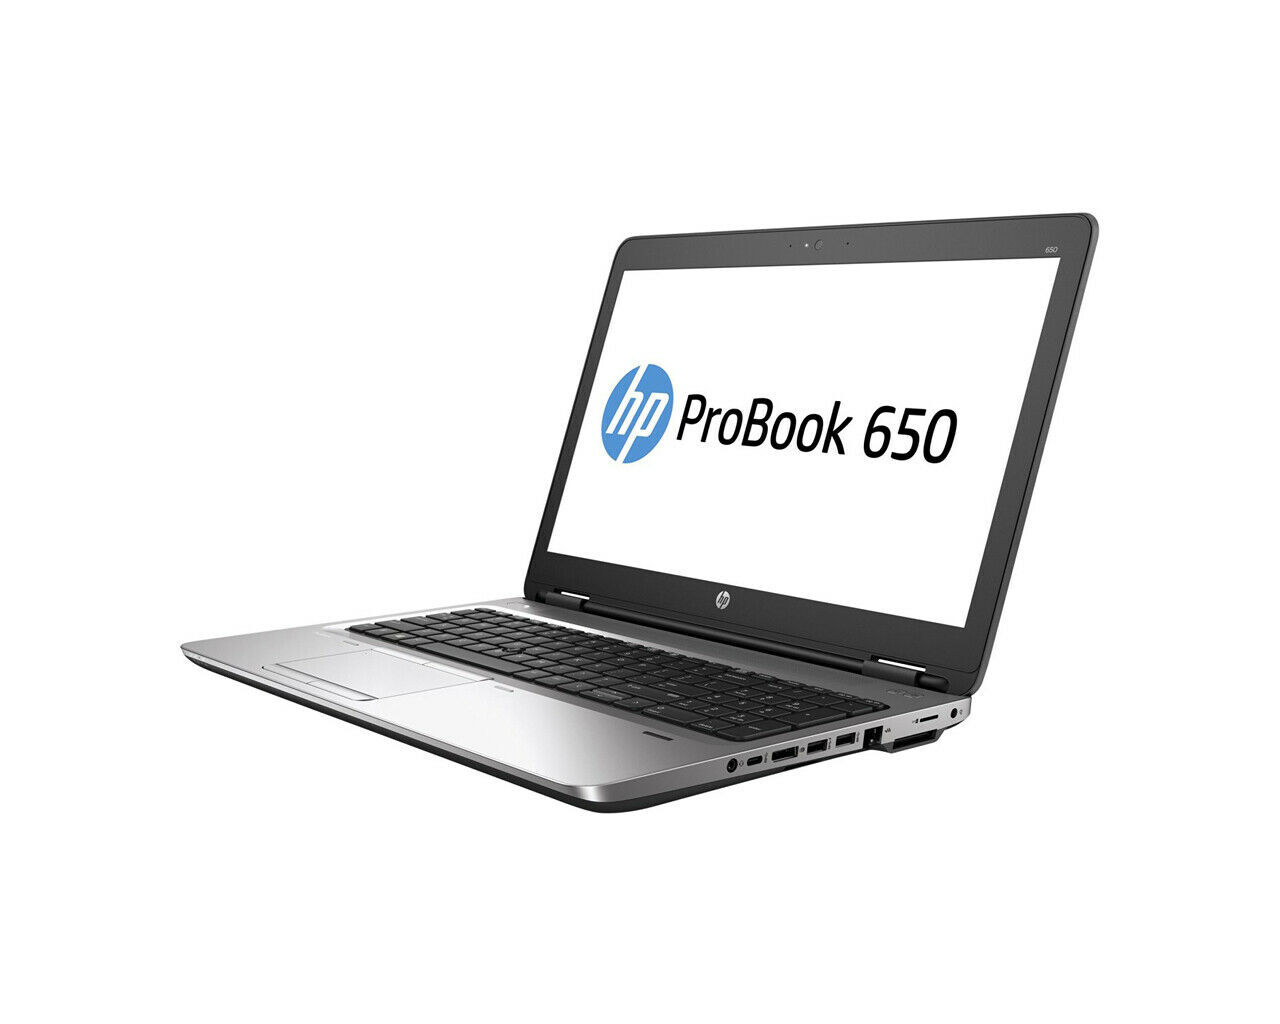 HP ProBook 650 G2 Intel i7 6600U 2.40GHz 16GB RAM 512GB SSD 15.6" Win 10 - B Grade Full Size Image